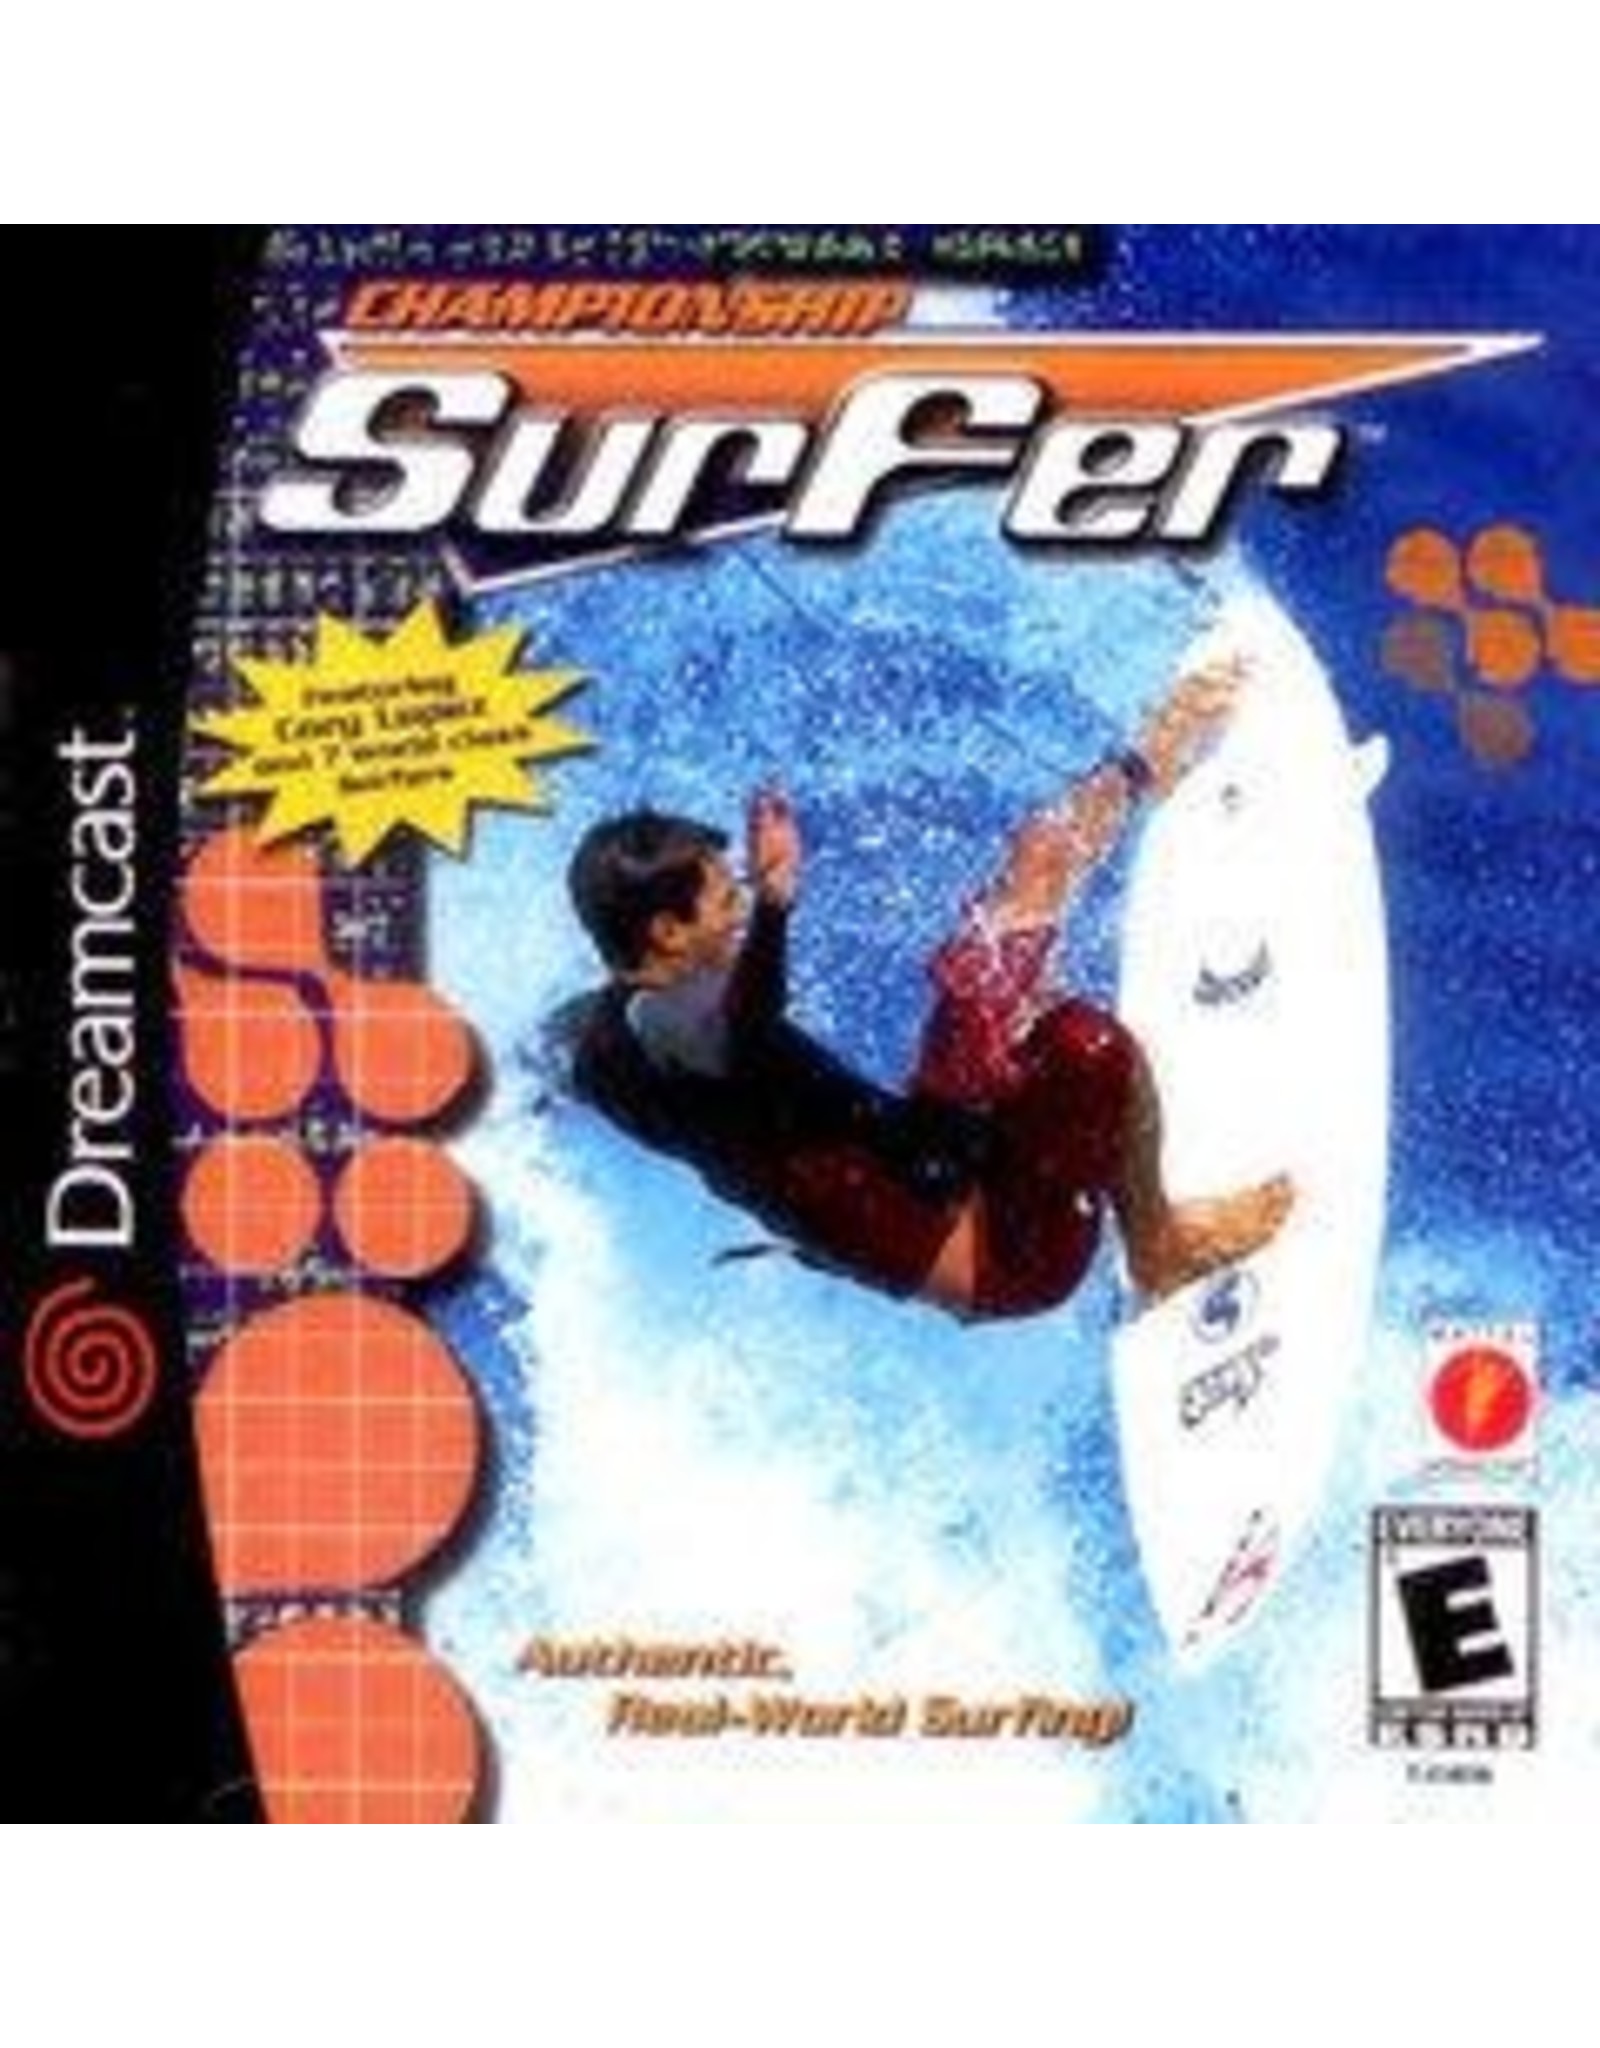 Sega Dreamcast Championship Surfer (Disc Only)